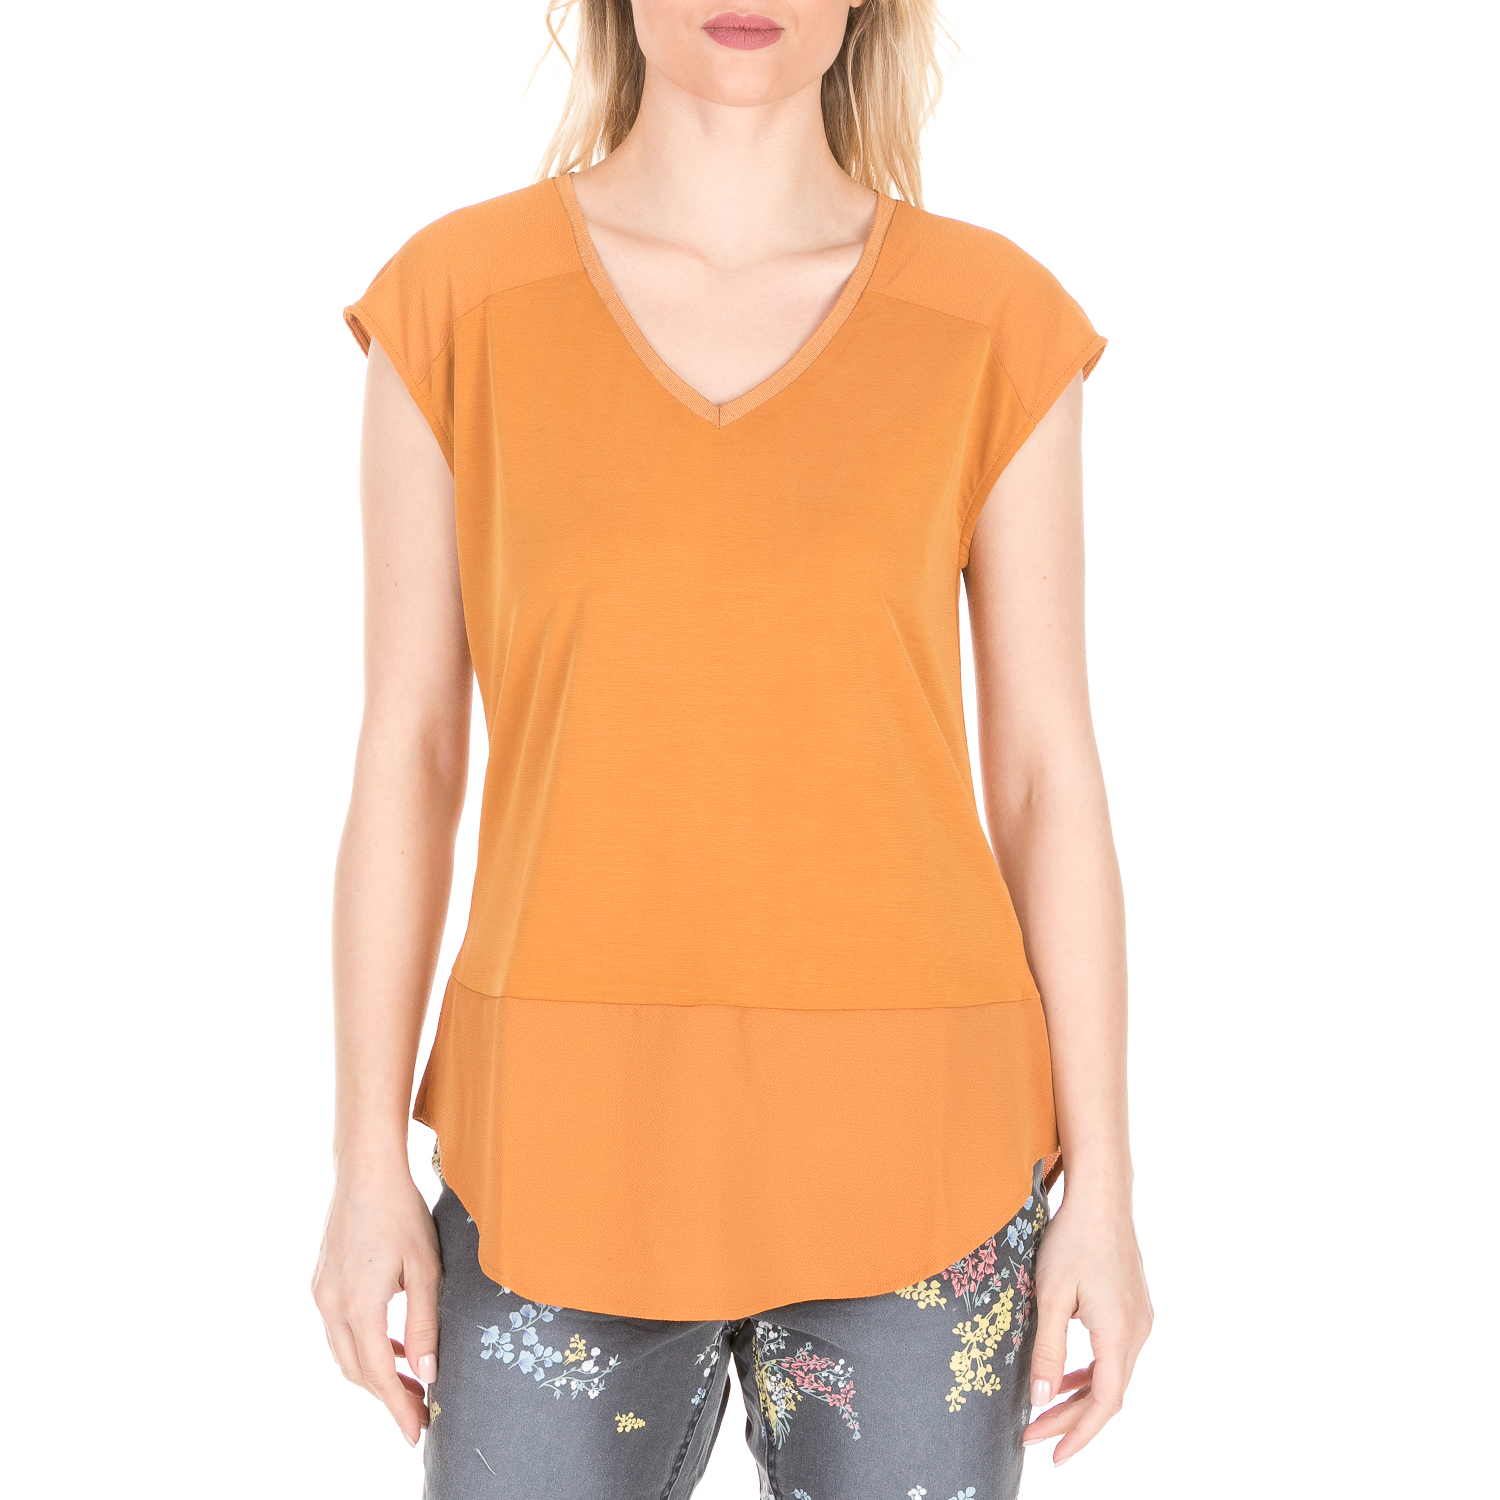 Γυναικεία/Ρούχα/Μπλούζες/Κοντομάνικες GARCIA JEANS - Γυναικεία κοντομάνικη μπλούζα GARCIA JEANS πορτοκαλί